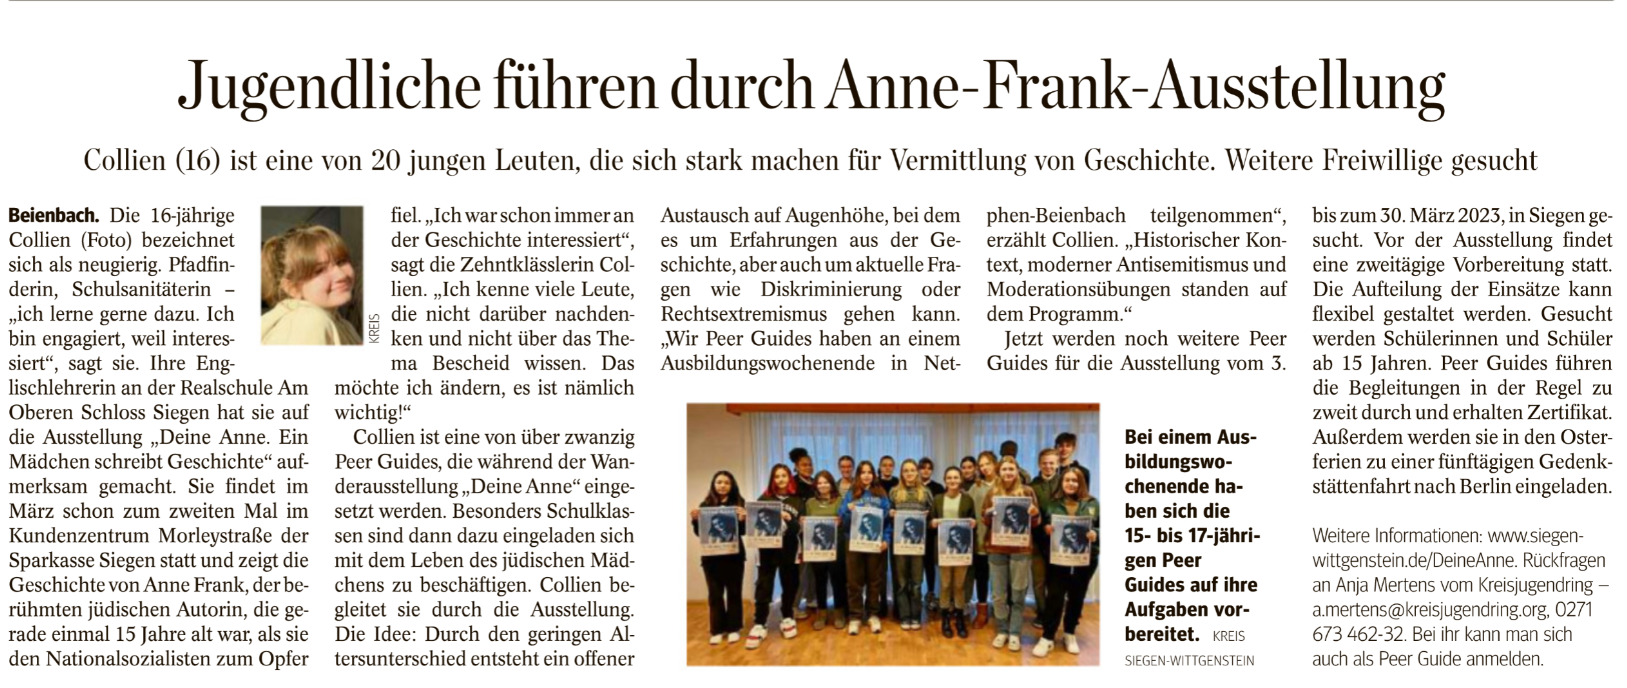 Abgebildet ist der Artikel der Westfälischen Rundschau vom 17. 12. 2022, in dem darüber berichtet wird, dass im März 2023  zu sogenannten Peer Guides ausgebildete Schülerinnen und Schüler durch die Anne-Frank-Ausstellung im Kundenzentrum der Sparkasse Siegen führen.